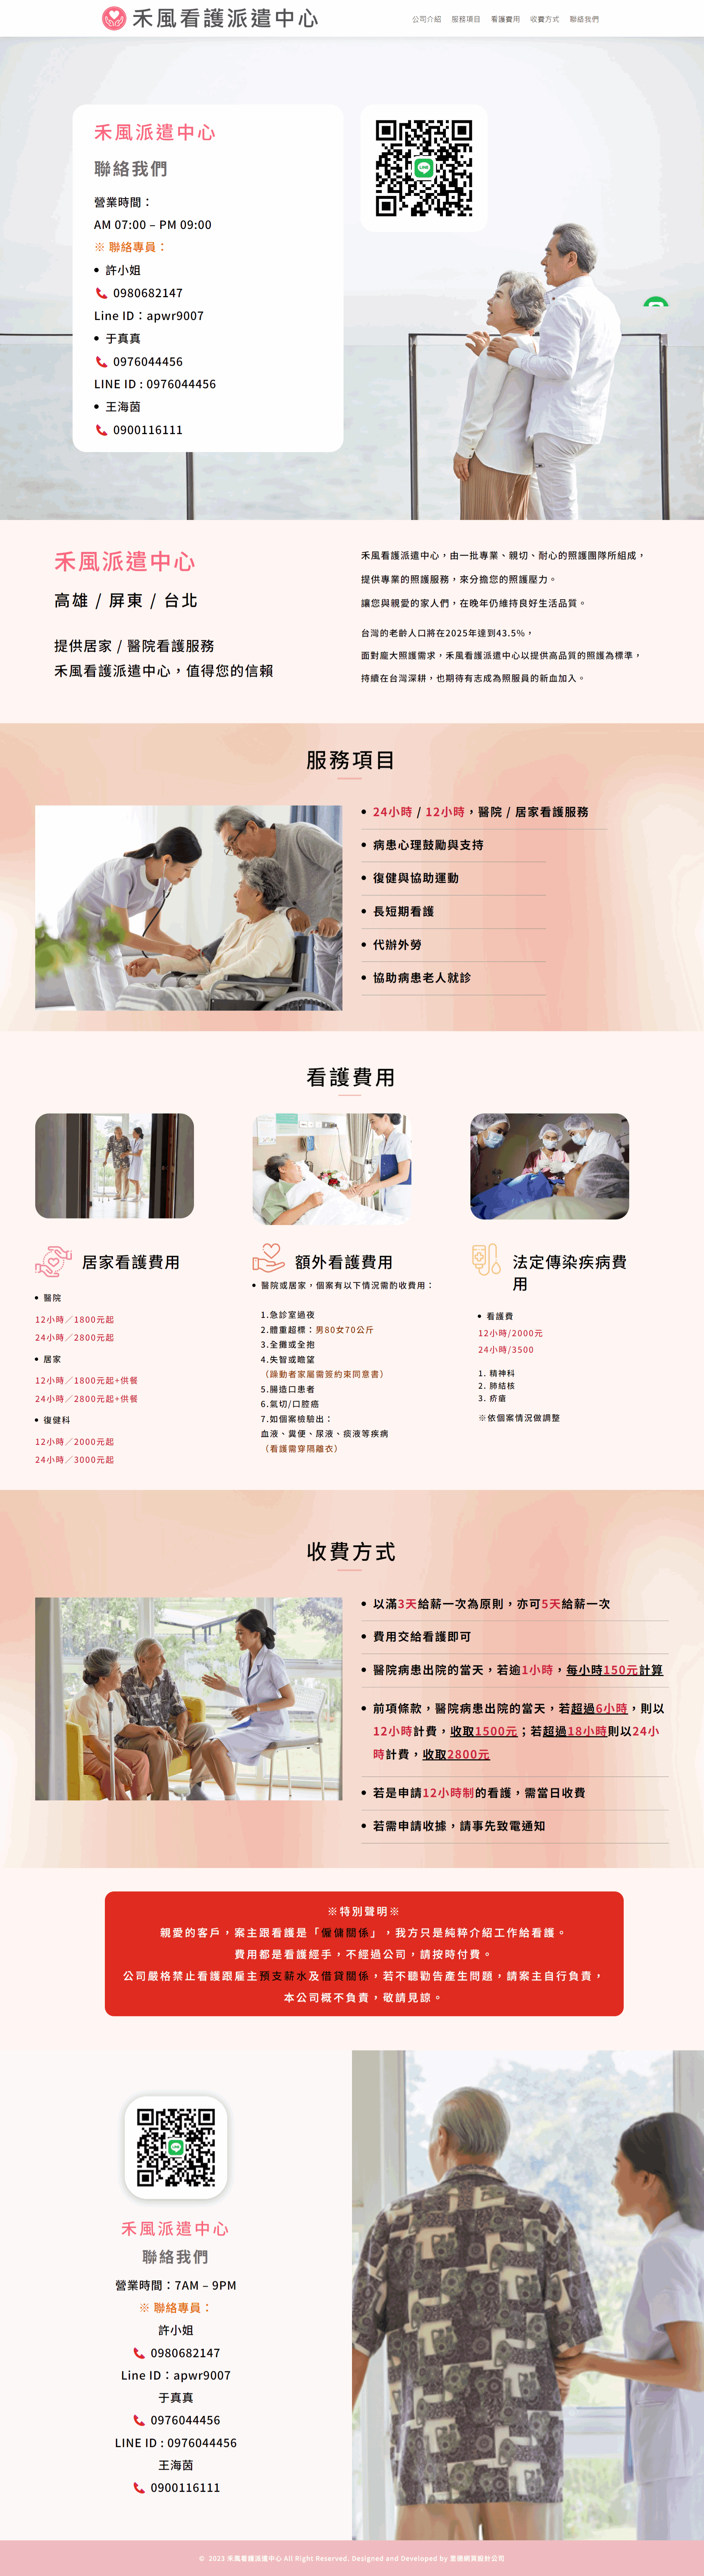 禾風看護派遣中心，技術服務業企業形象網站案例